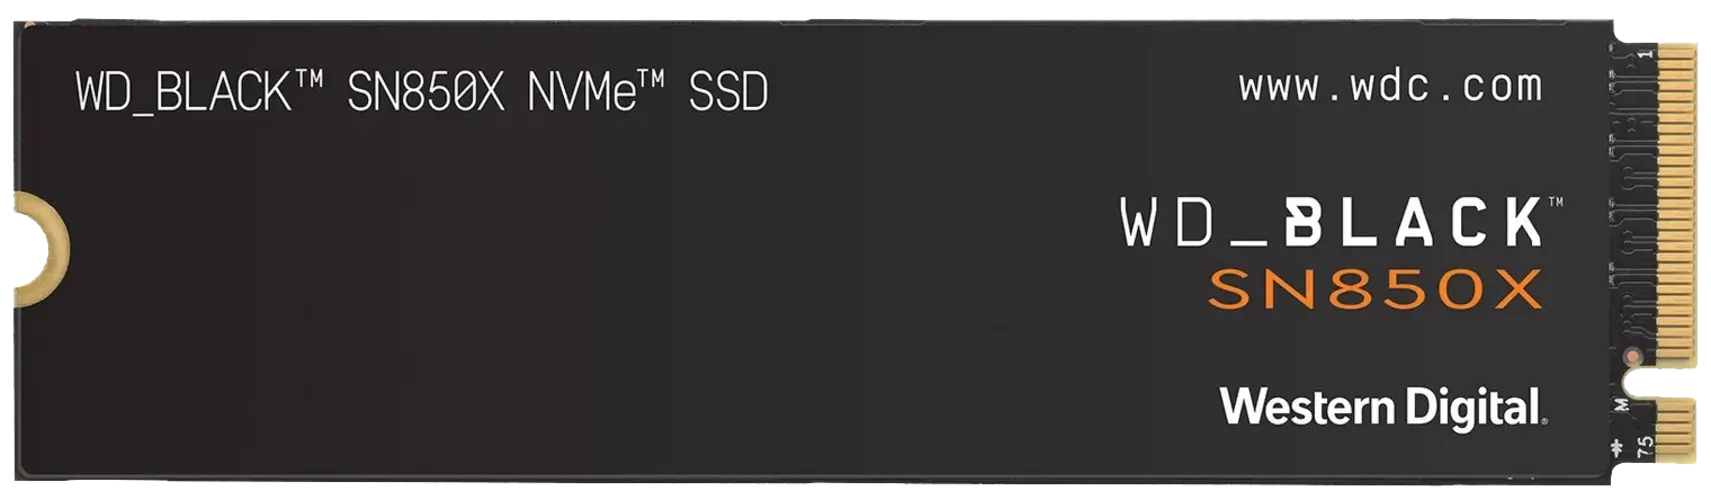 هارد درايف SN850X من ويسترن ديجيتال مزود بهيت سينك - 1 تيرا - بإضاءة أر جي بي